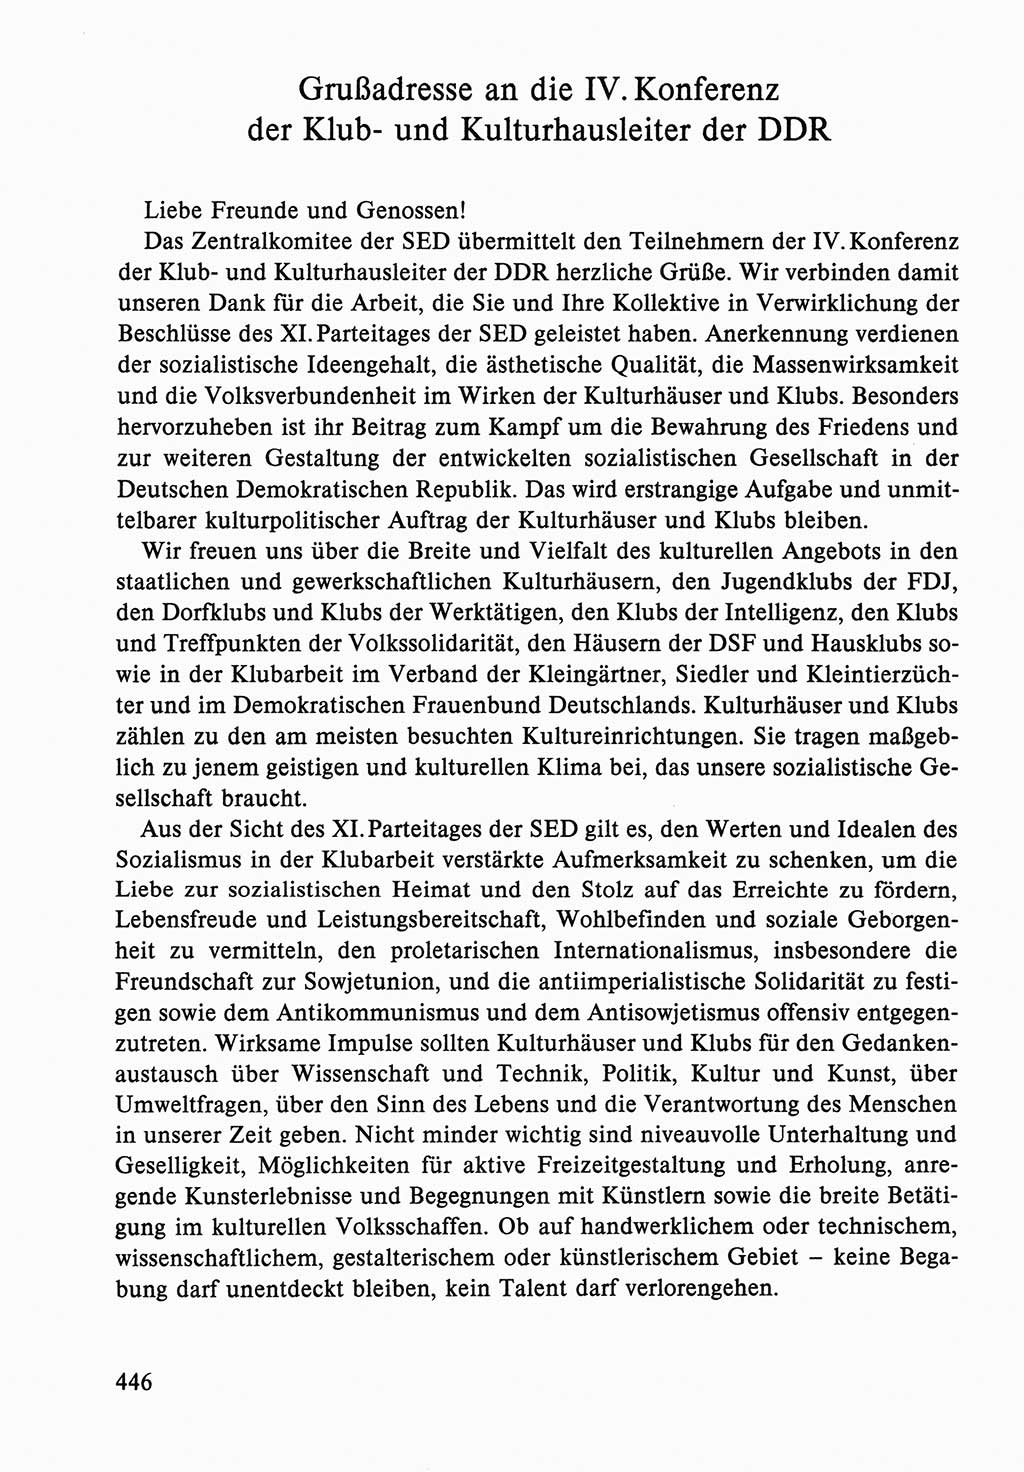 Dokumente der Sozialistischen Einheitspartei Deutschlands (SED) [Deutsche Demokratische Republik (DDR)] 1986-1987, Seite 446 (Dok. SED DDR 1986-1987, S. 446)